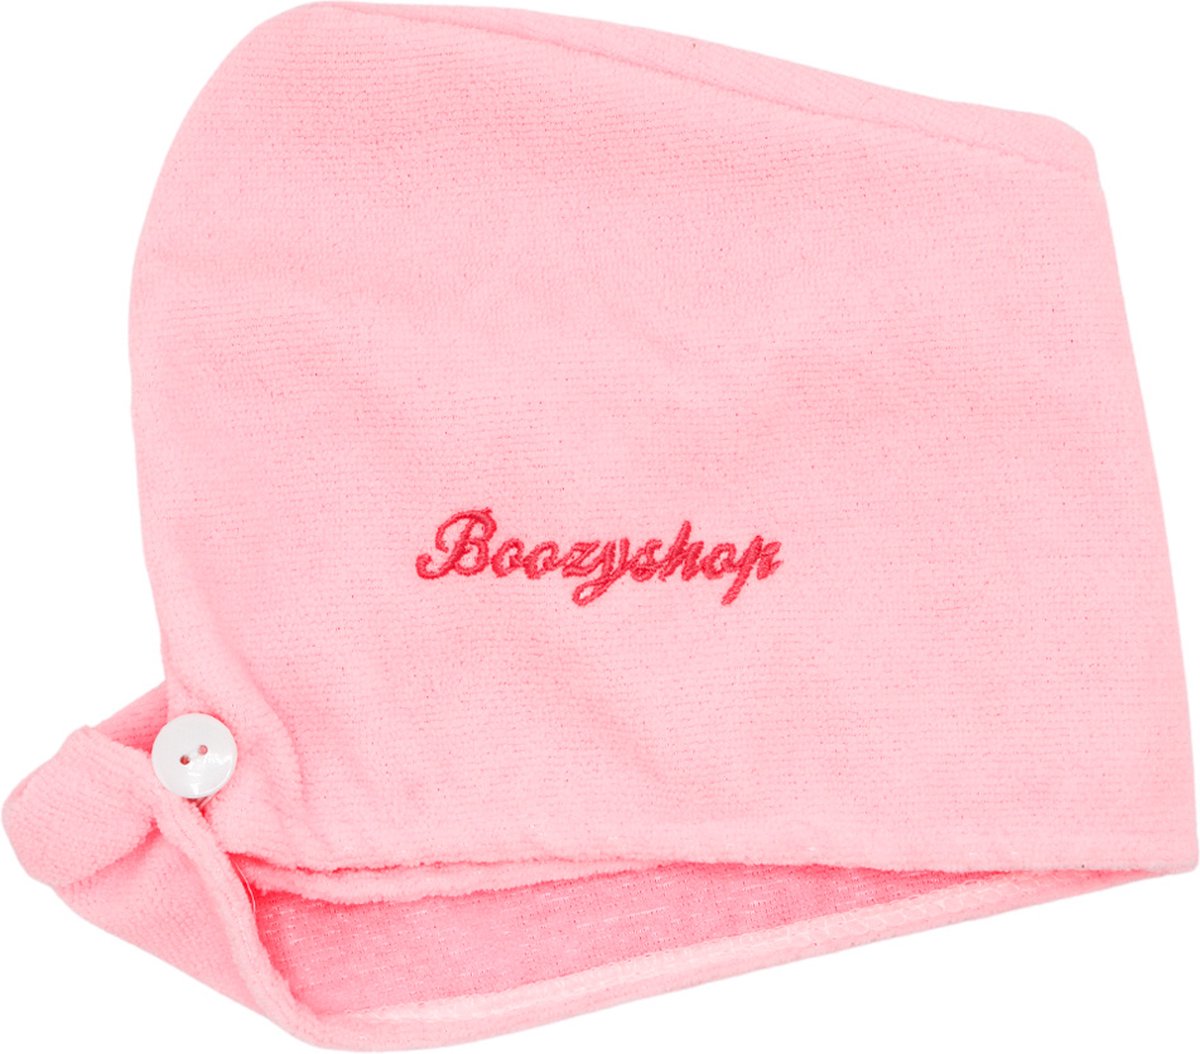 Boozyshop ® Haarhanddoek - Microvezel Haar Handdoek - Hoofdhanddoek - Hair Towel - Super absorberend - Beschadigt je haar niet - Microfibre Hair Dry Wrap